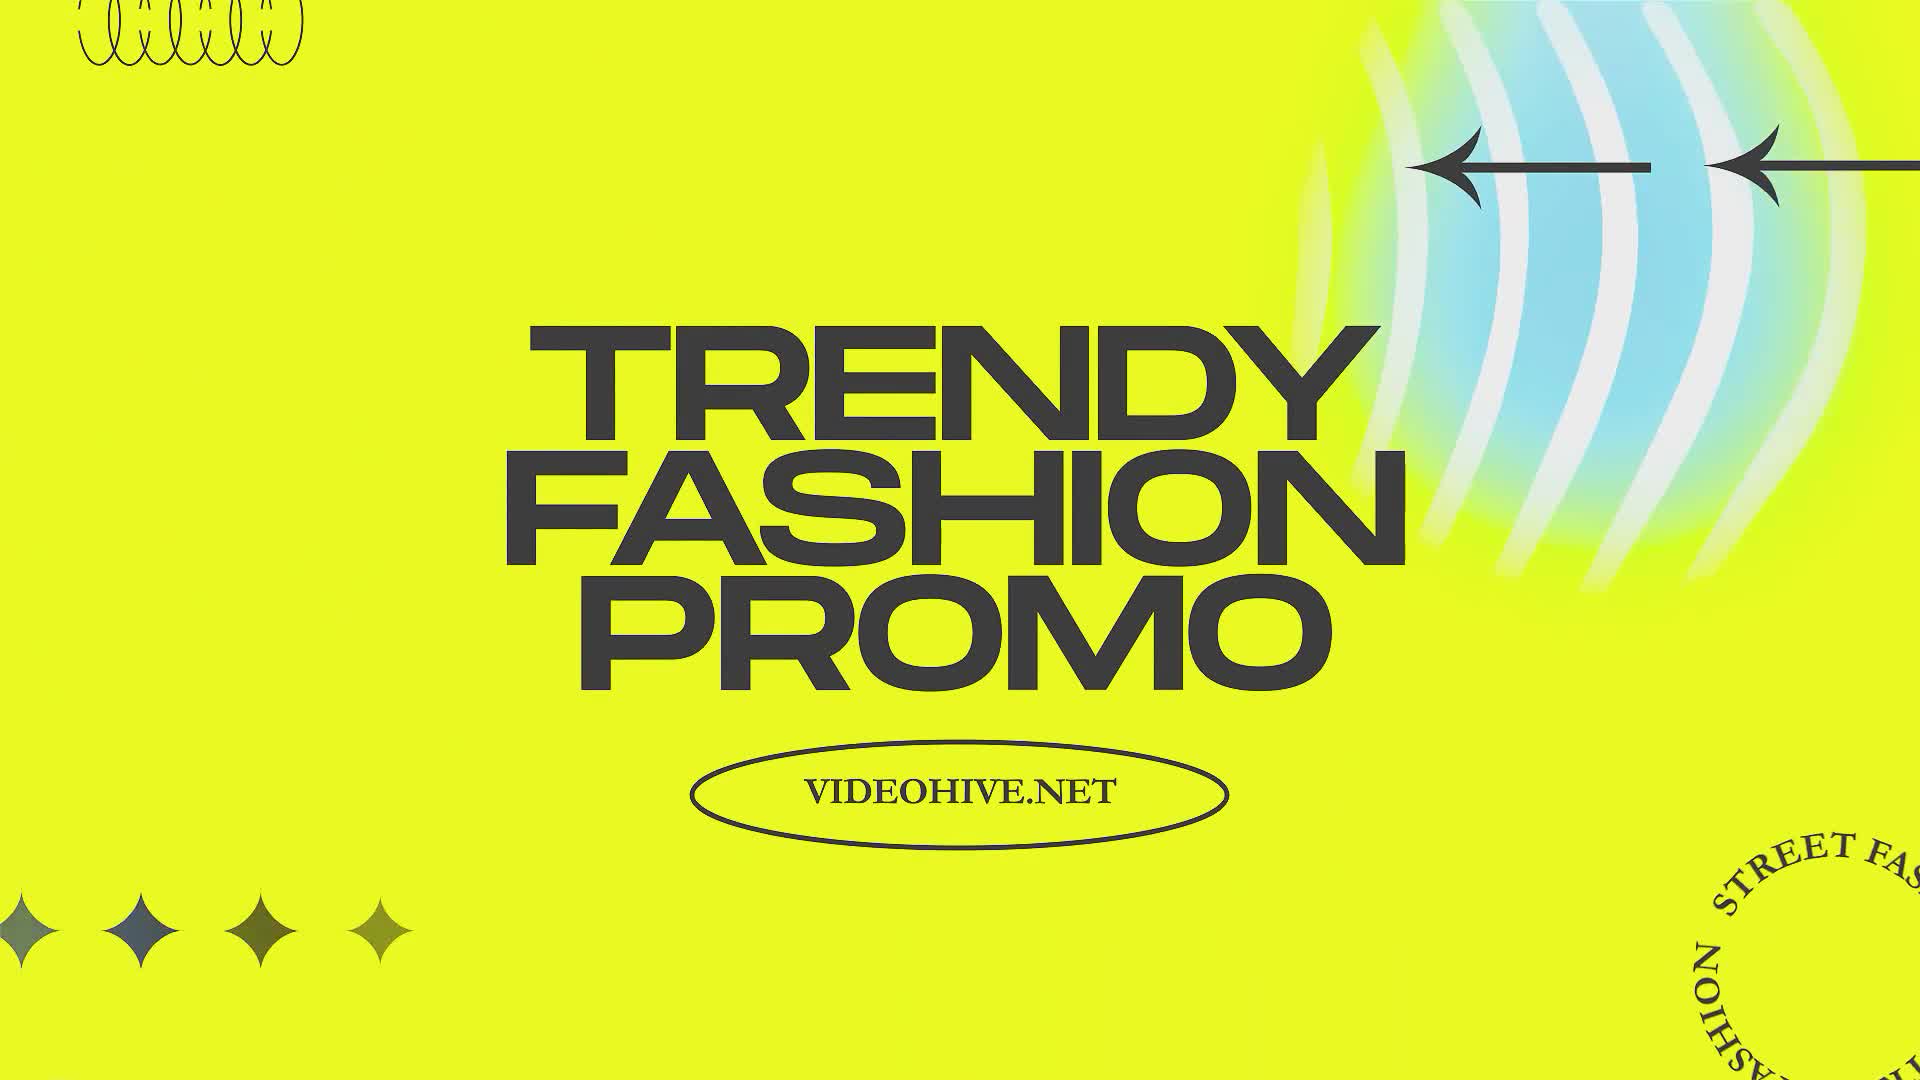 Trendy Fashion Promo Videohive 32686774 Premiere Pro Image 1